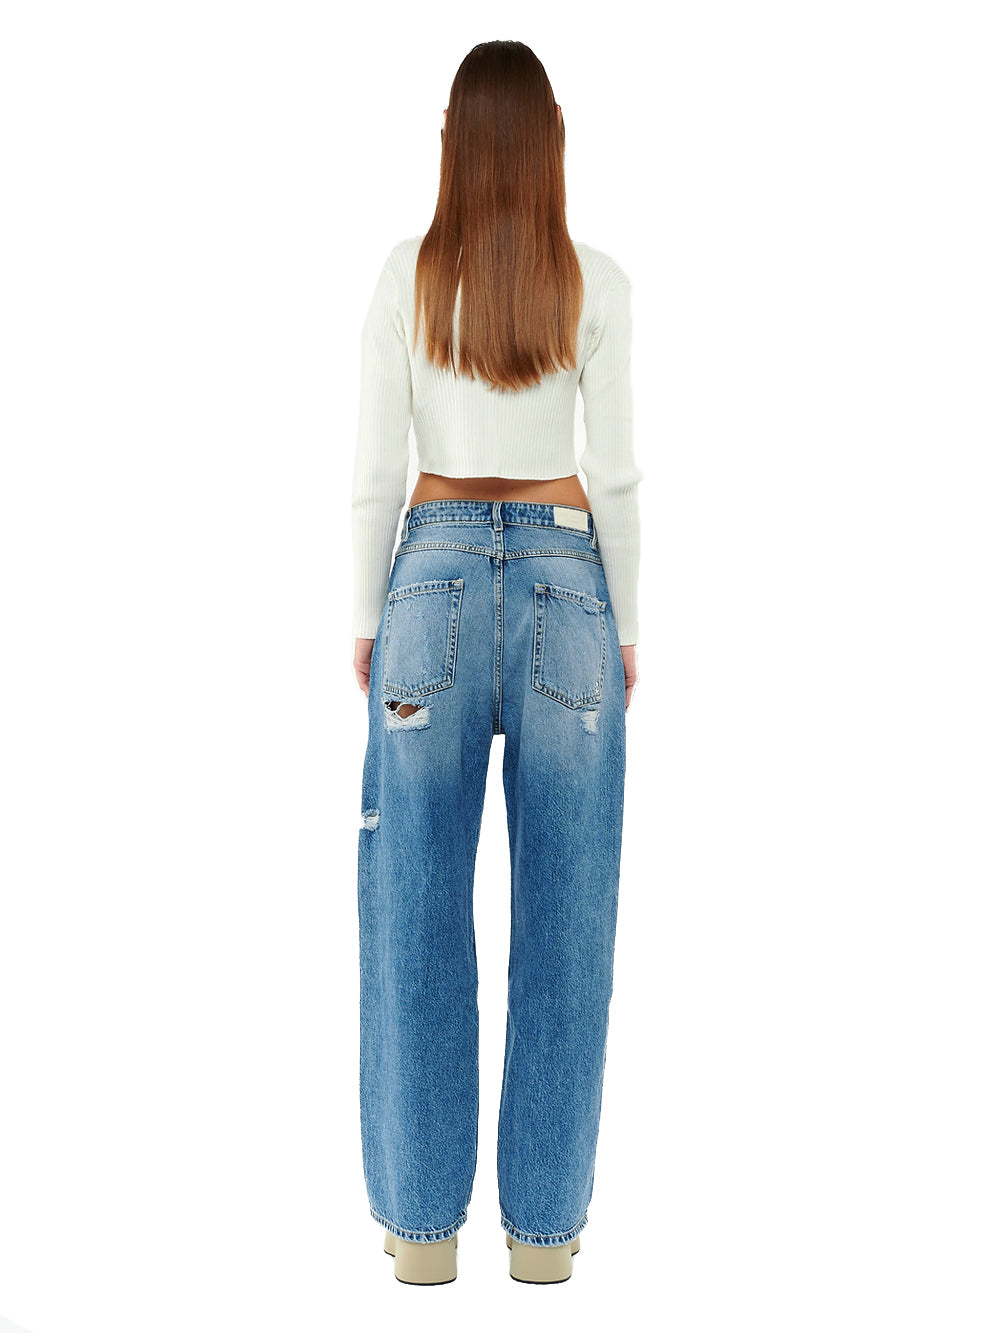 Poppy women's jeans with wide leg